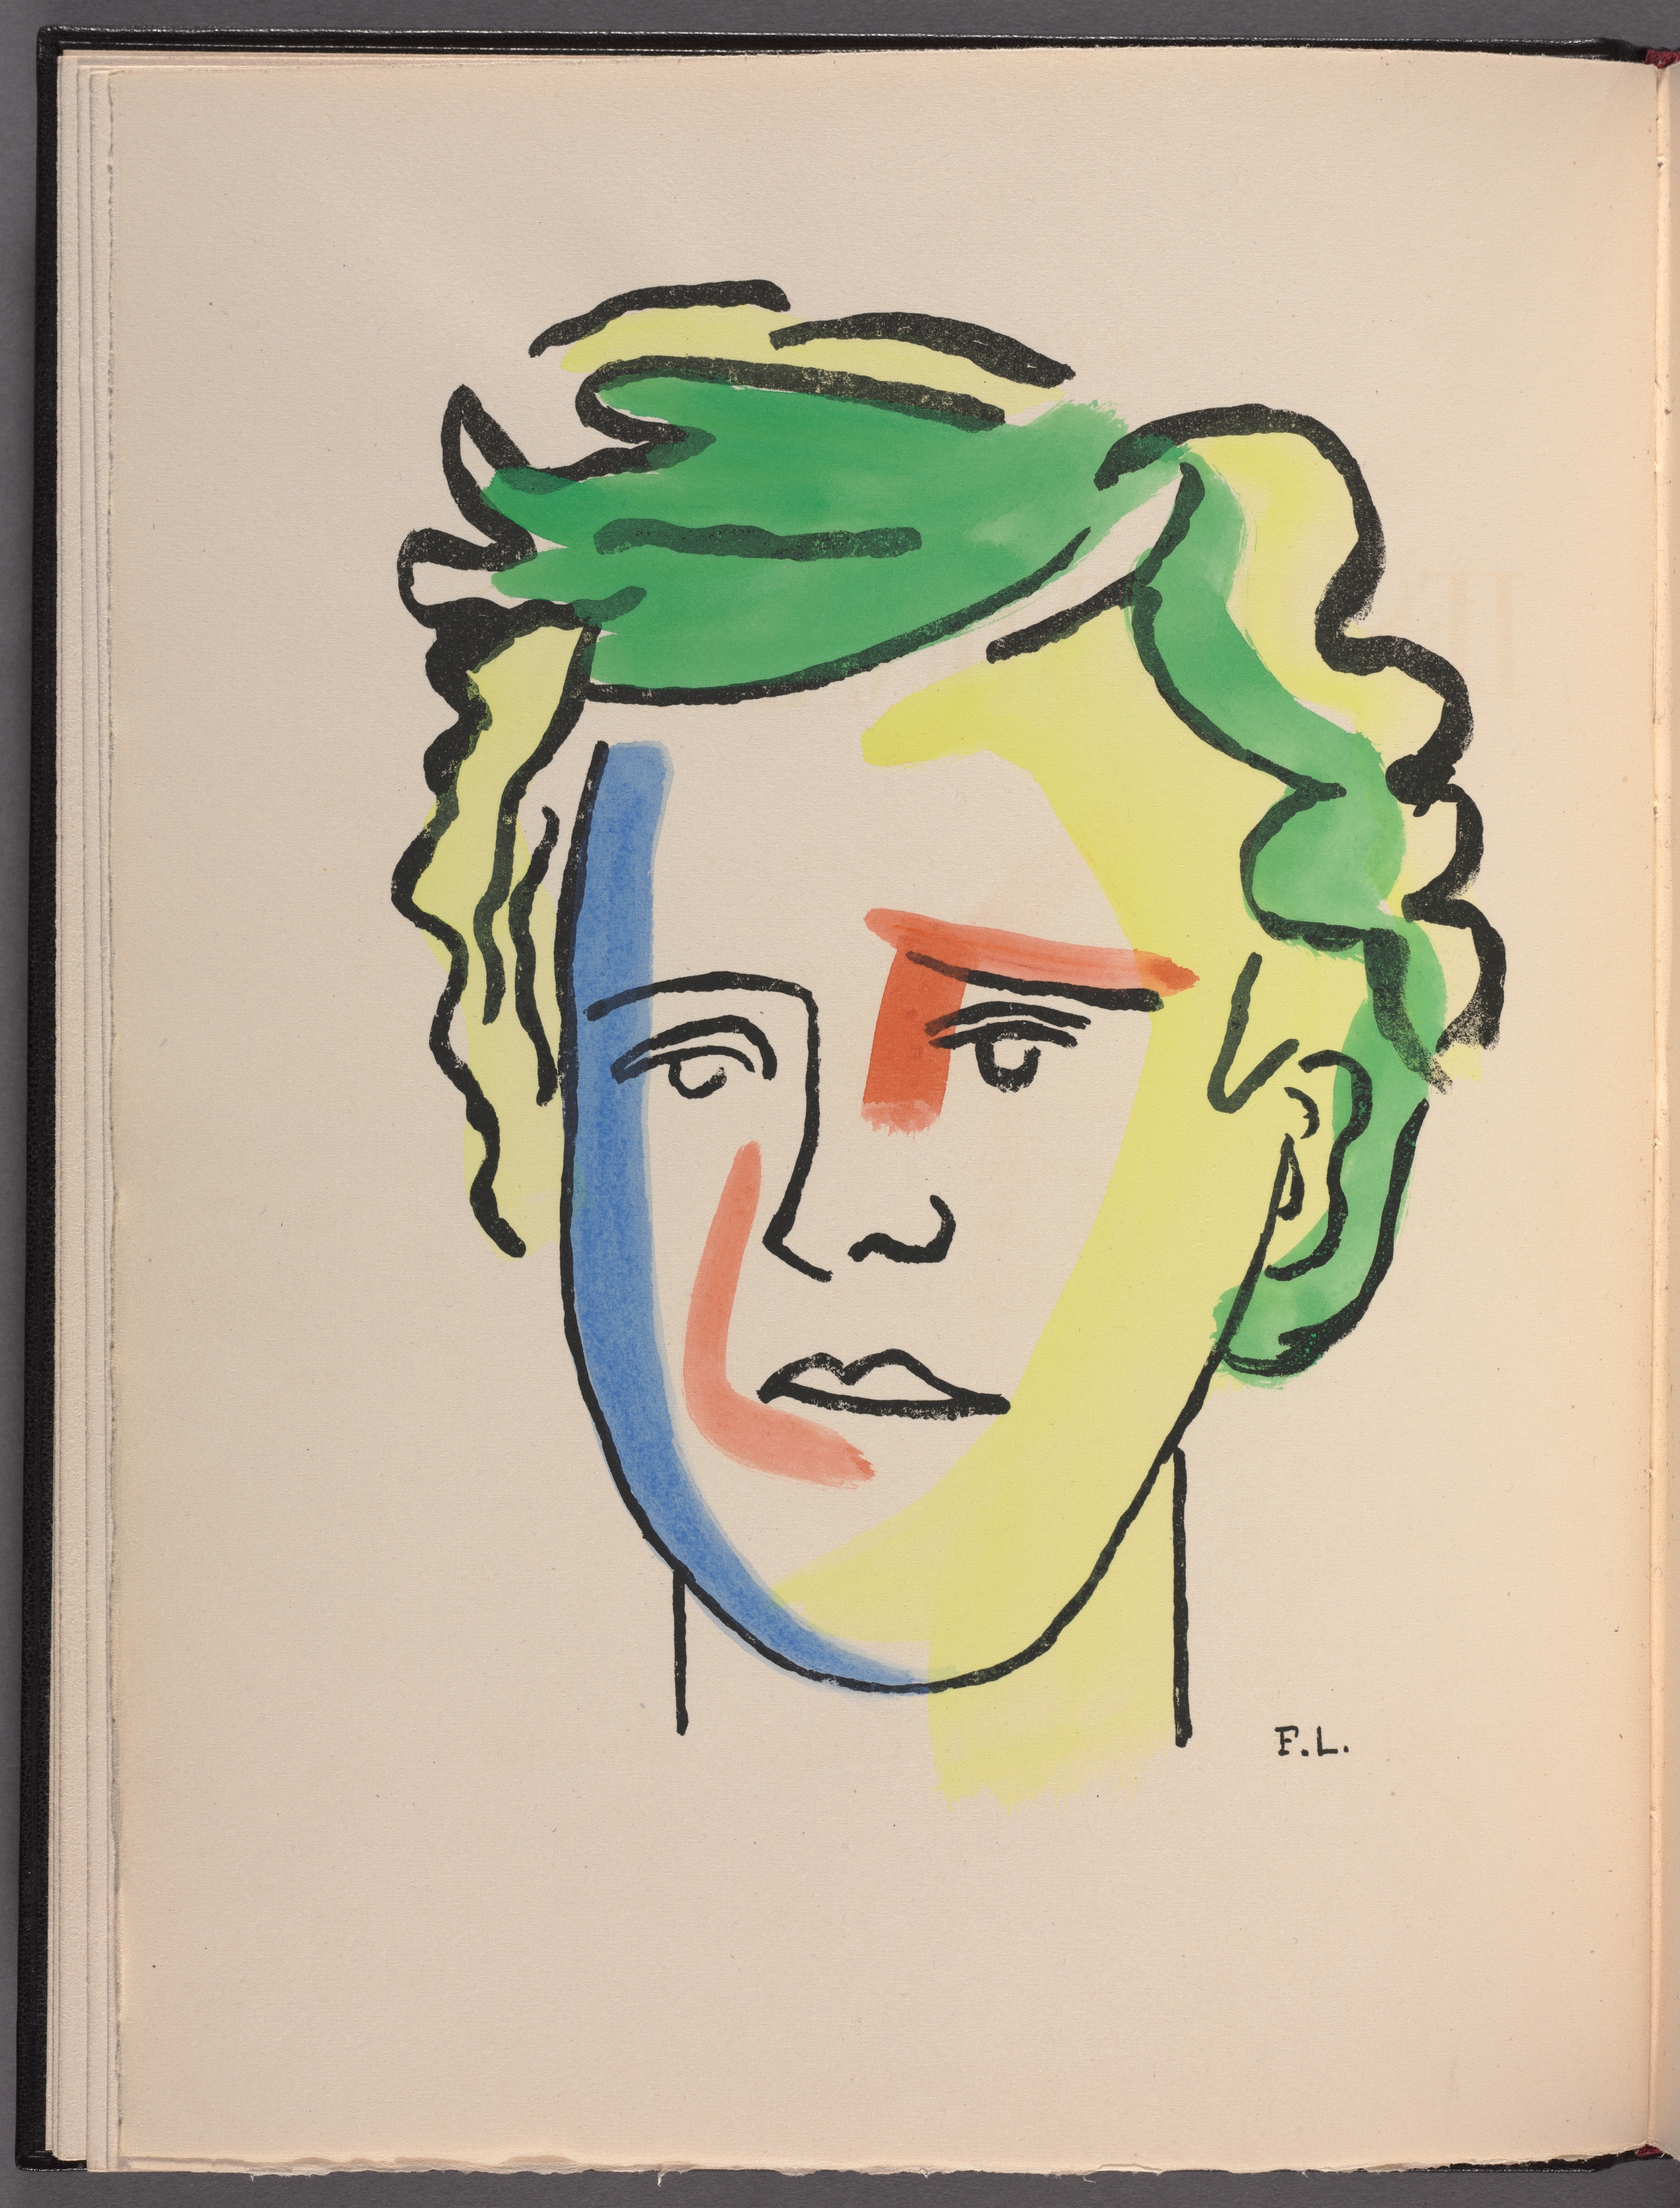 Les Illuminations: Portrait of Rimbaud